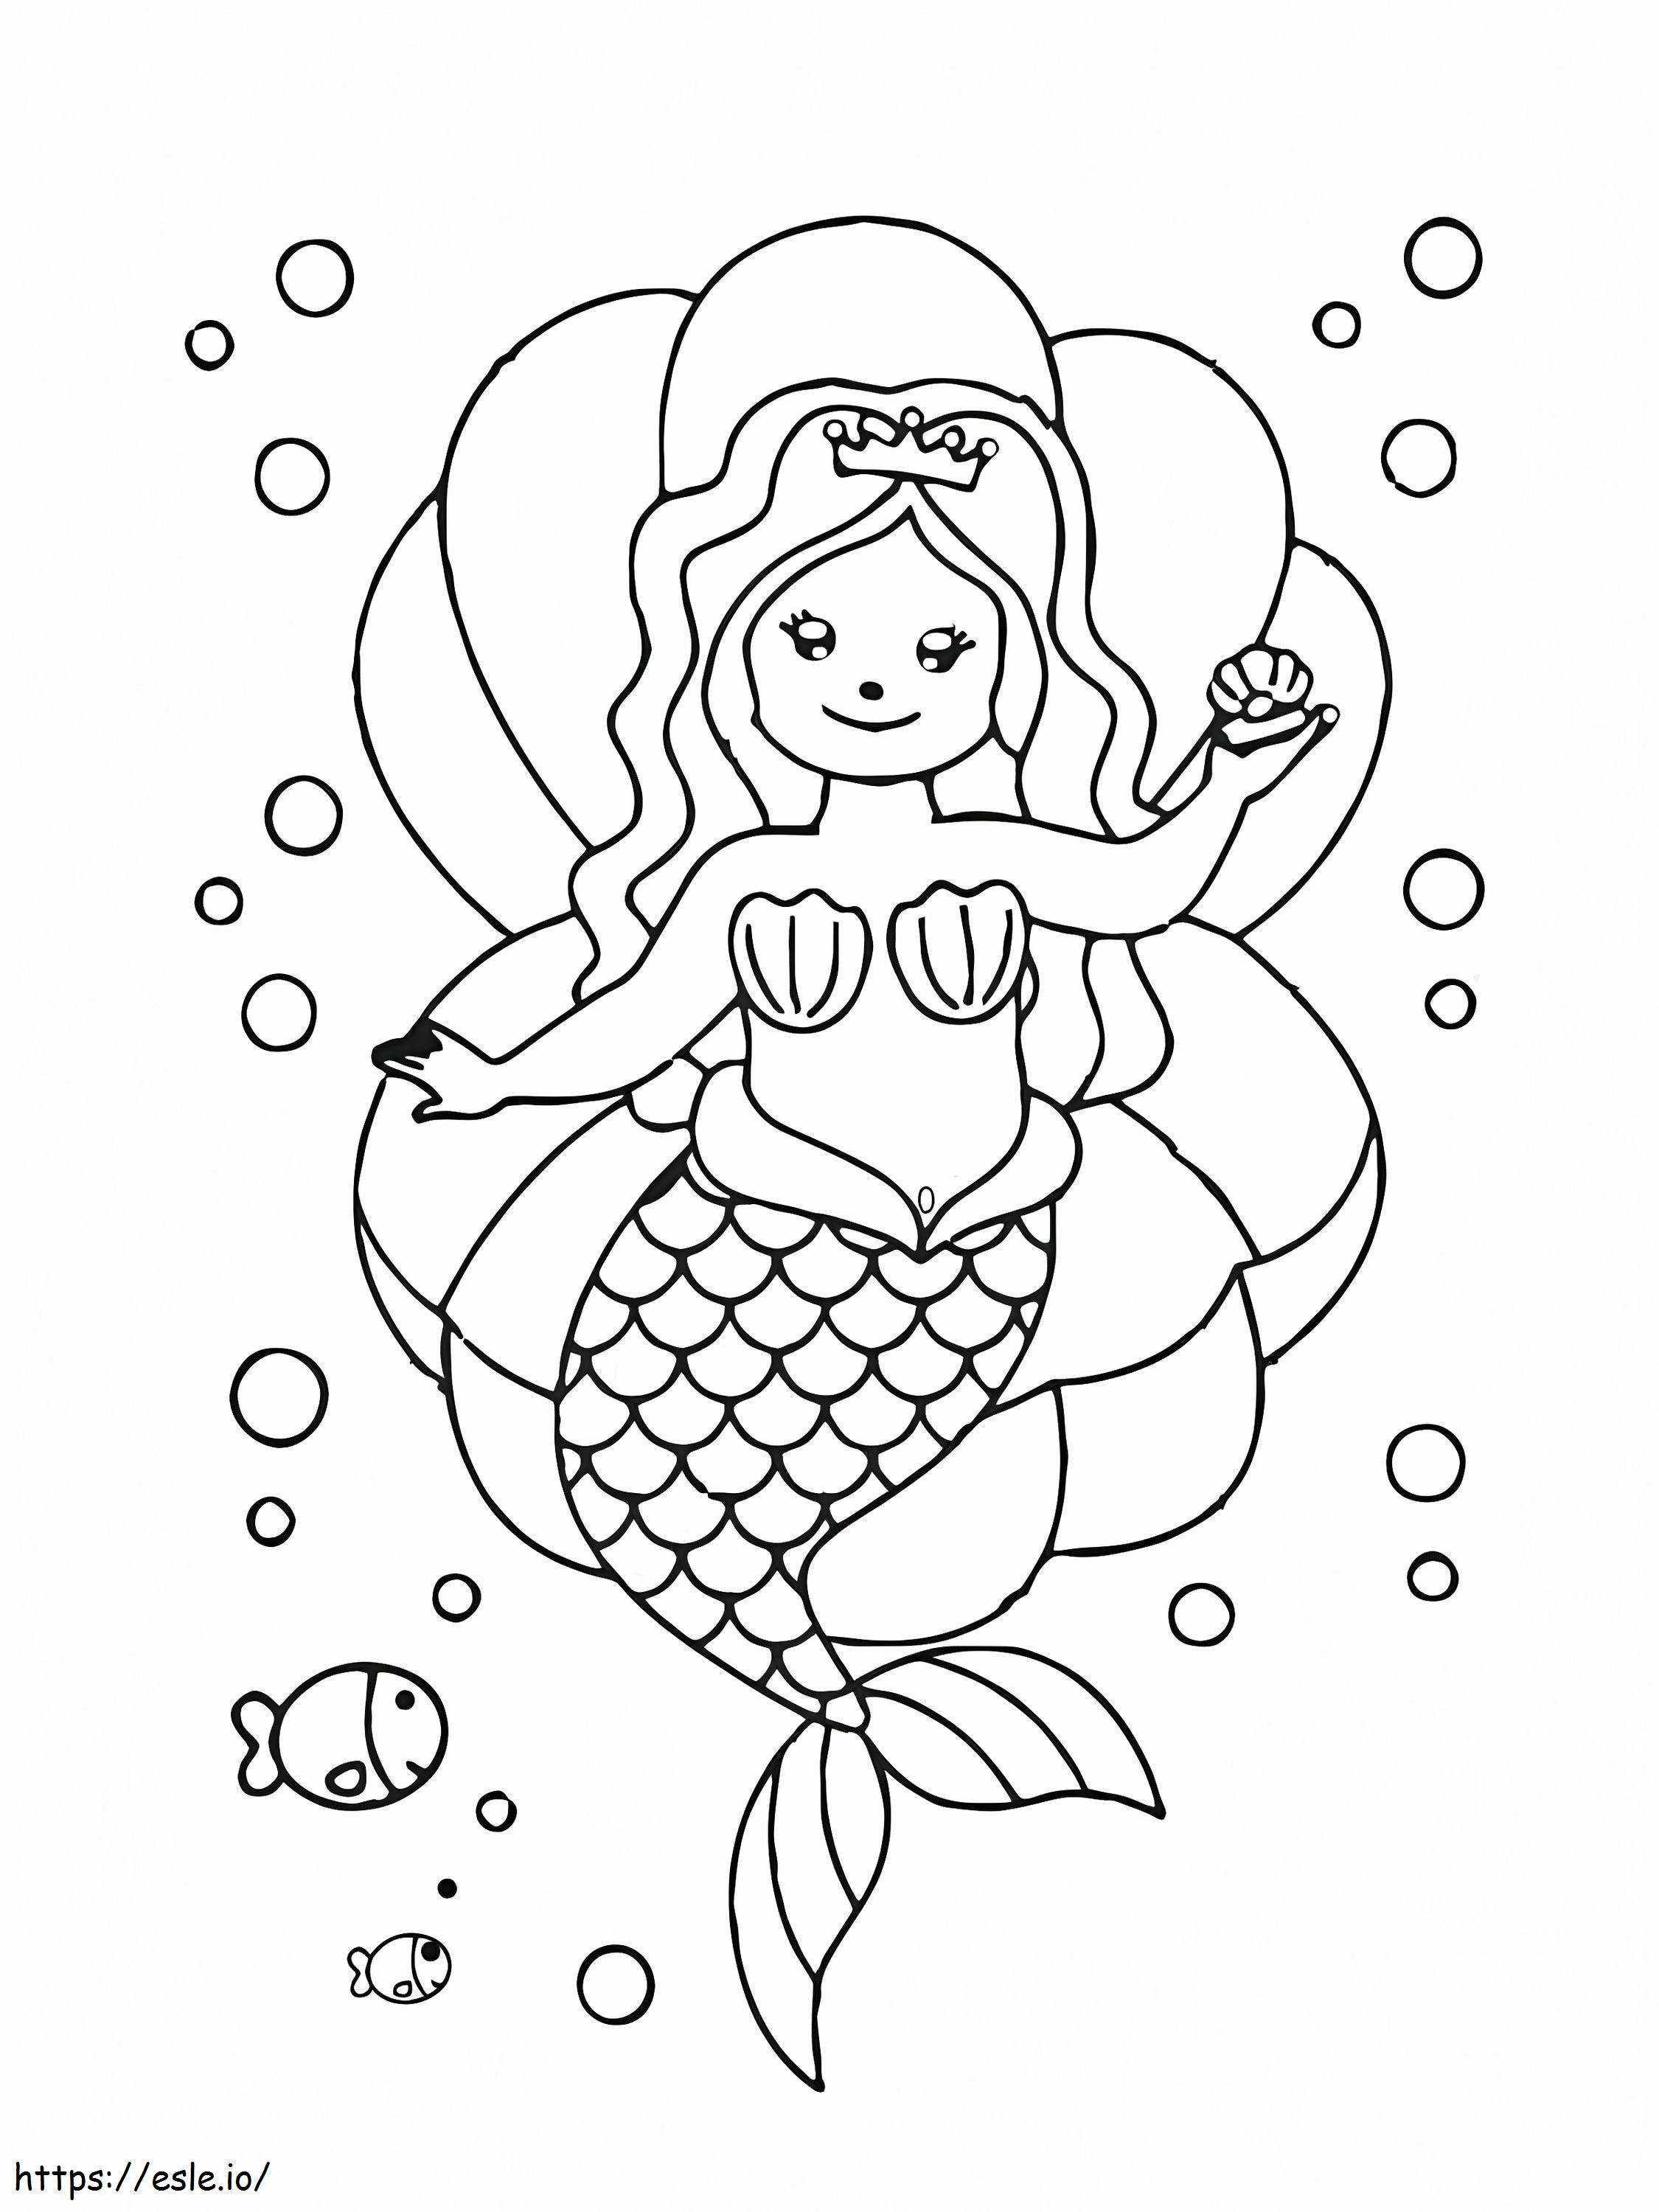 Meerjungfrau sitzt auf Muschel ausmalbilder